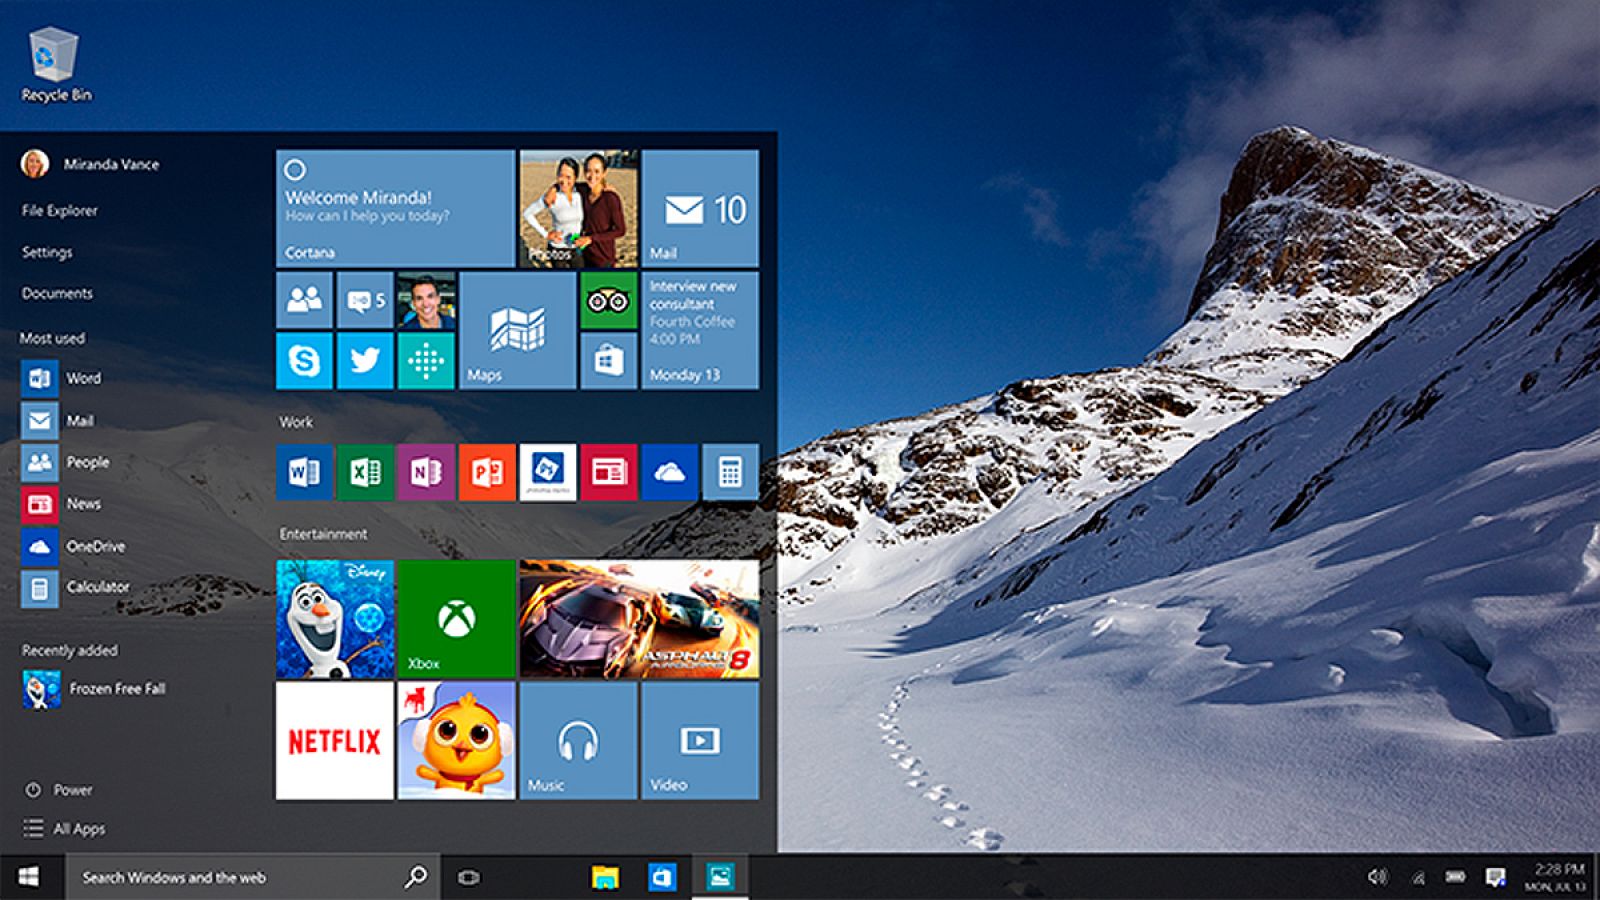 Diseño del nuevo Windows 10